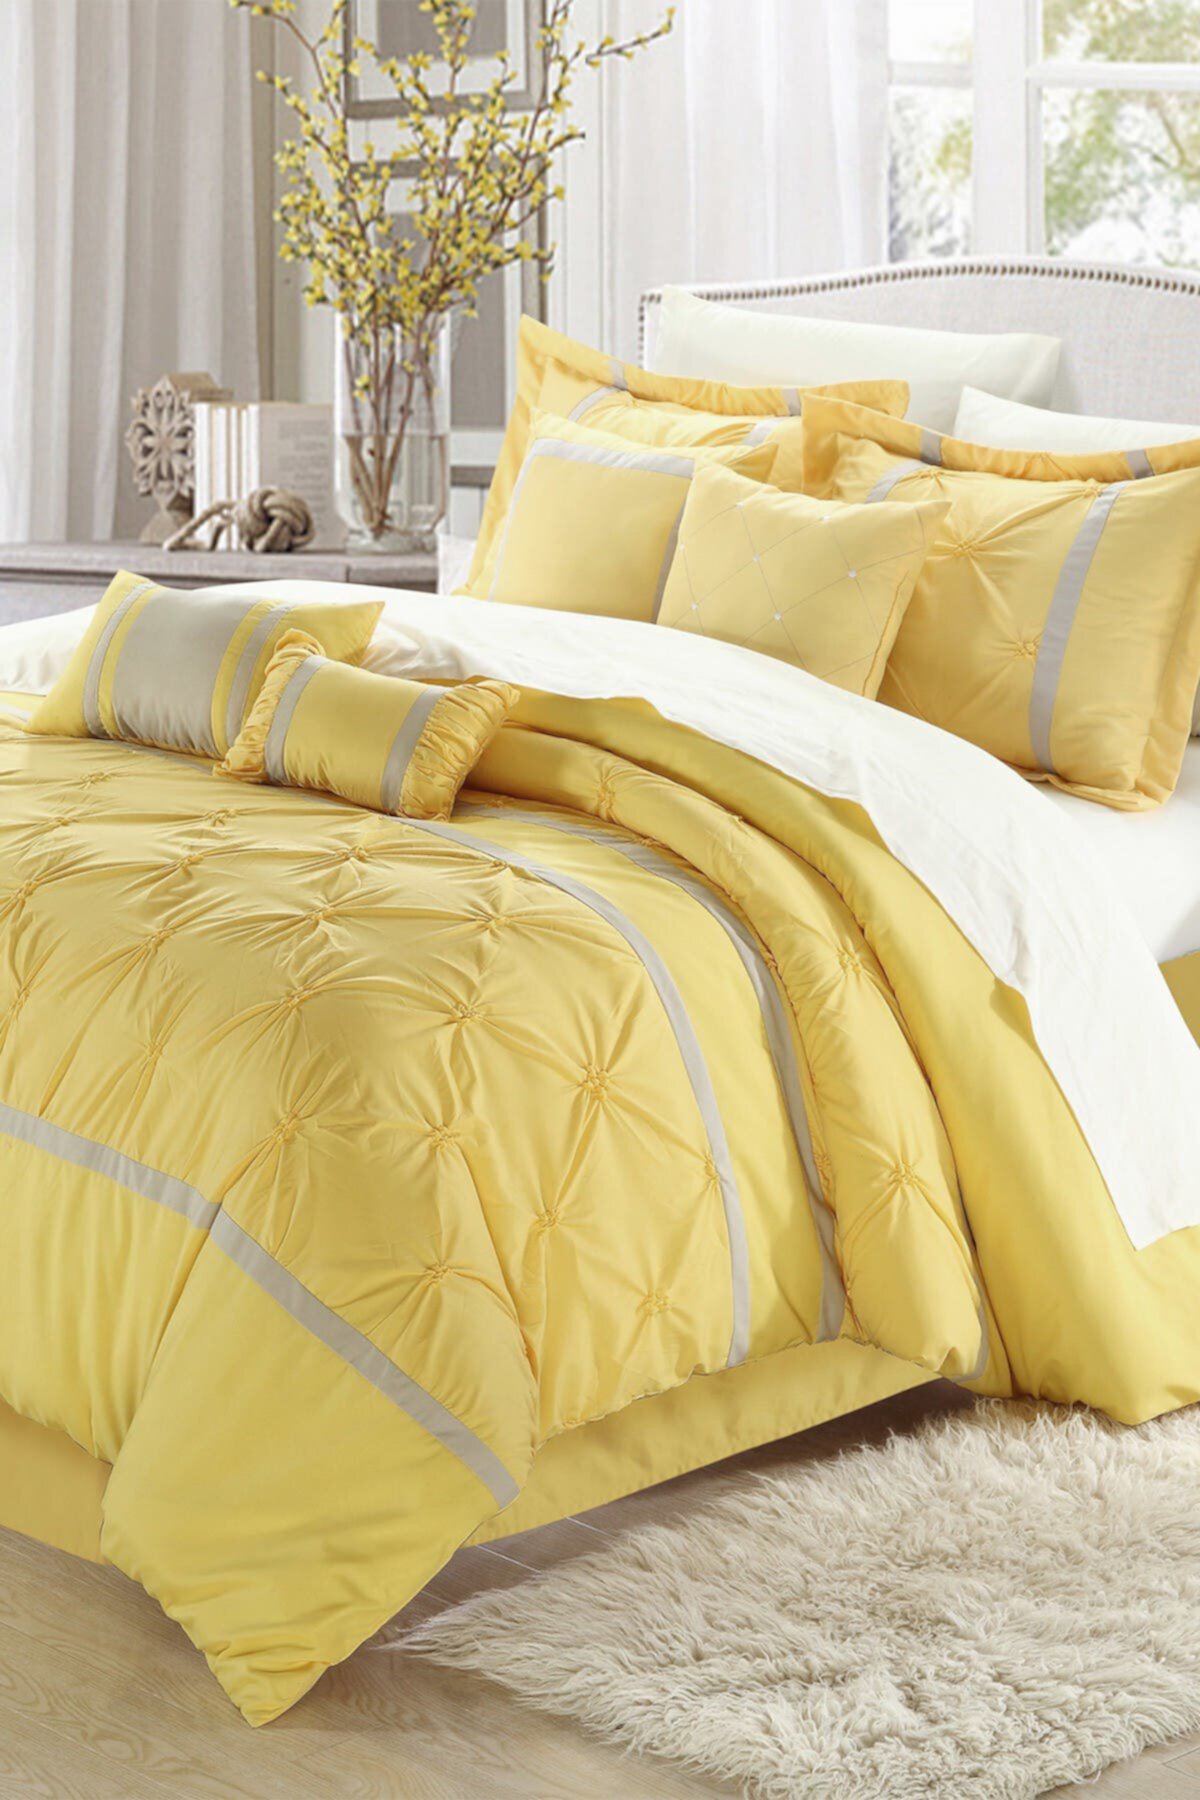 Спальня с желтым покрывалом